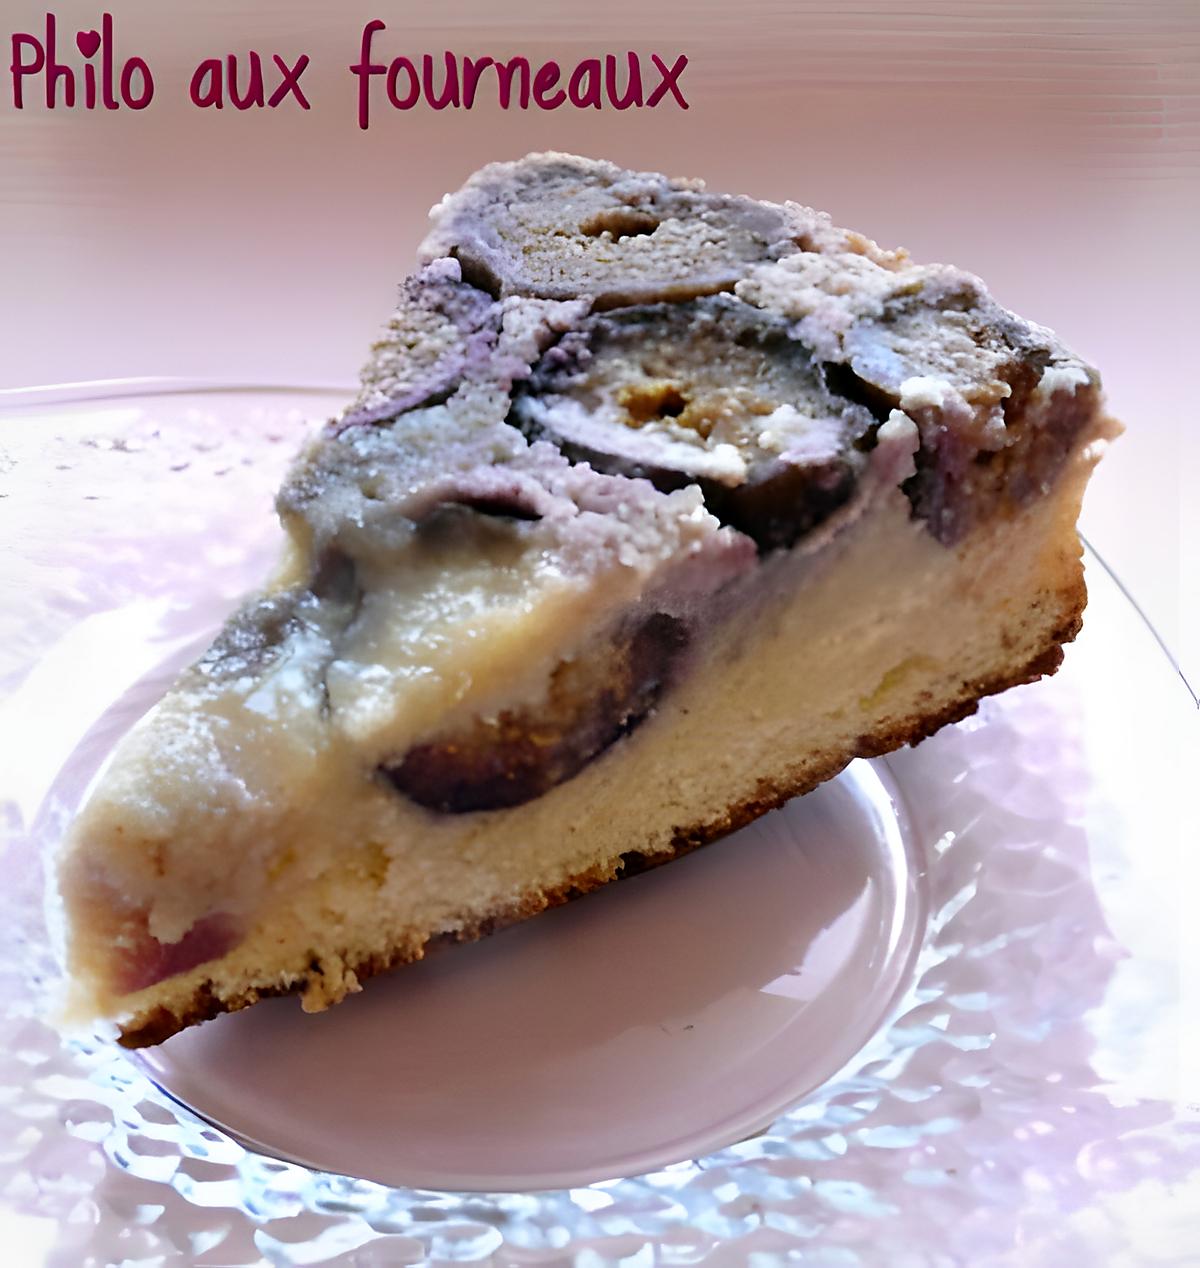 recette Gâteau pâtissier aux figues, à la crème d'amandes & à la fève Tonka